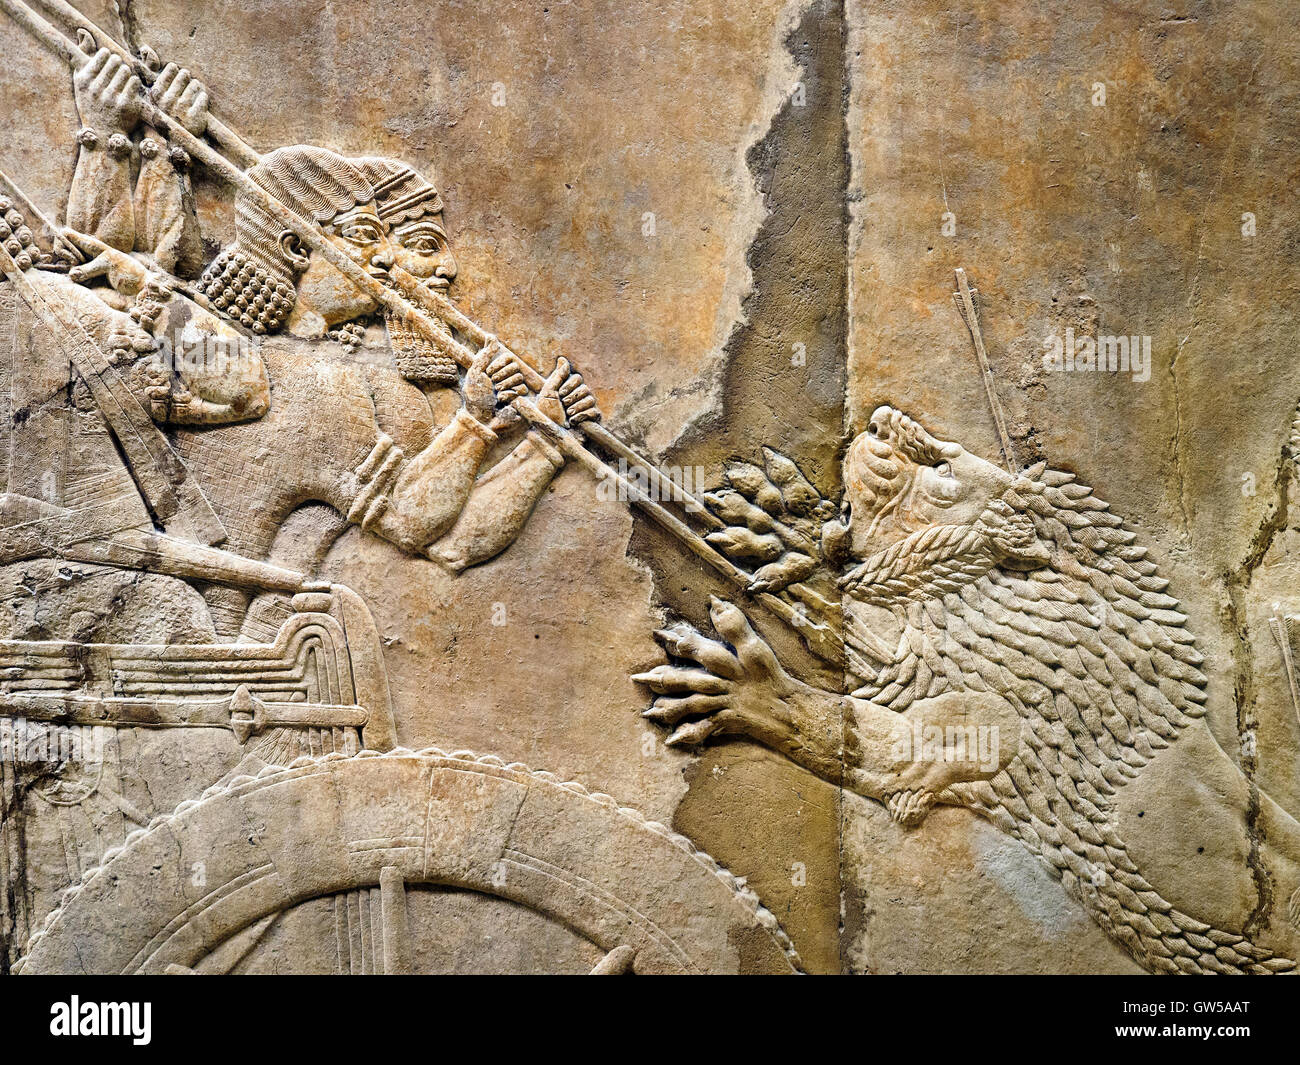 La chasse au lion royal assyrien, environ 645-635 BC de Ninive, Palais du British Museum - Londres, Angleterre Banque D'Images